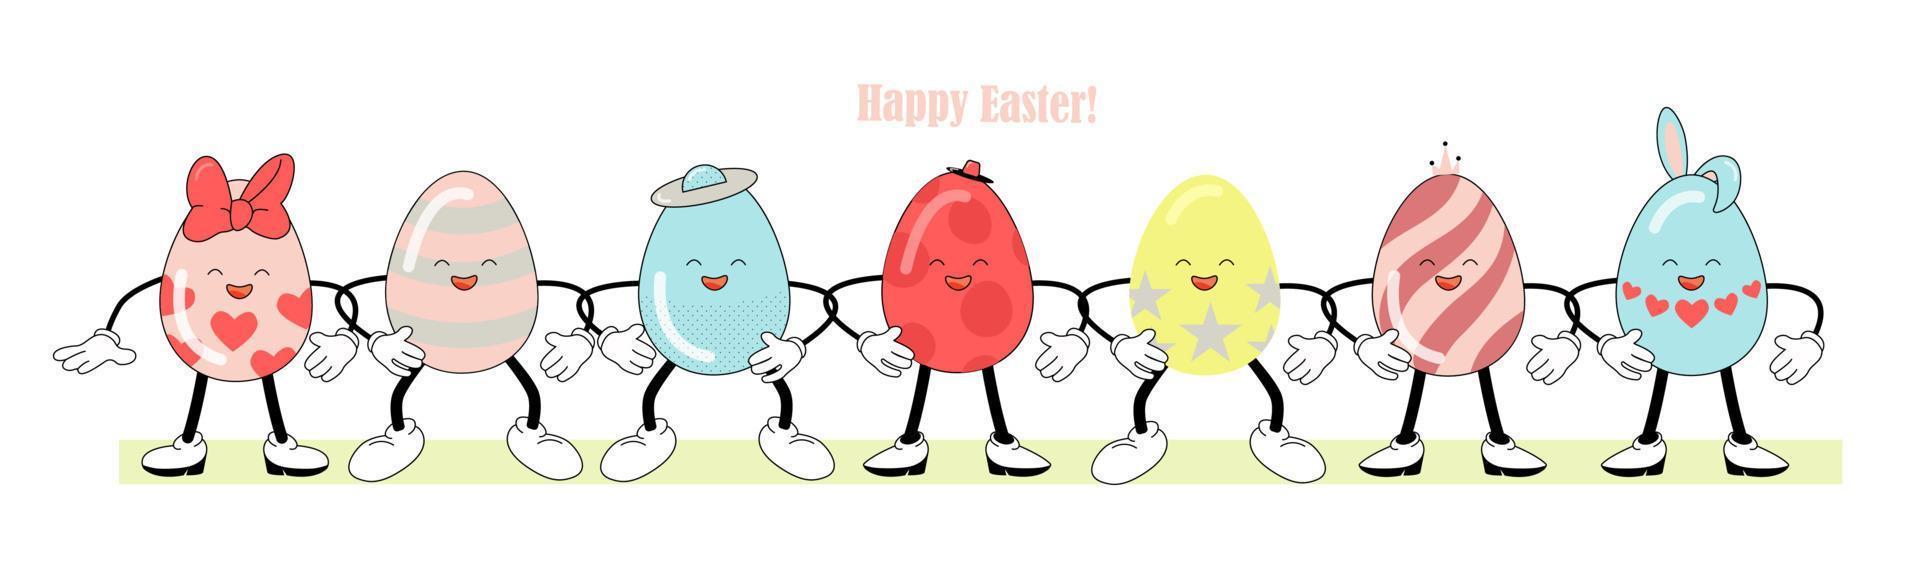 dipinto Pasqua uova - divertente personaggi, retrò atmosfera. contento Pasqua scritta. luminosa vettore illustrazione